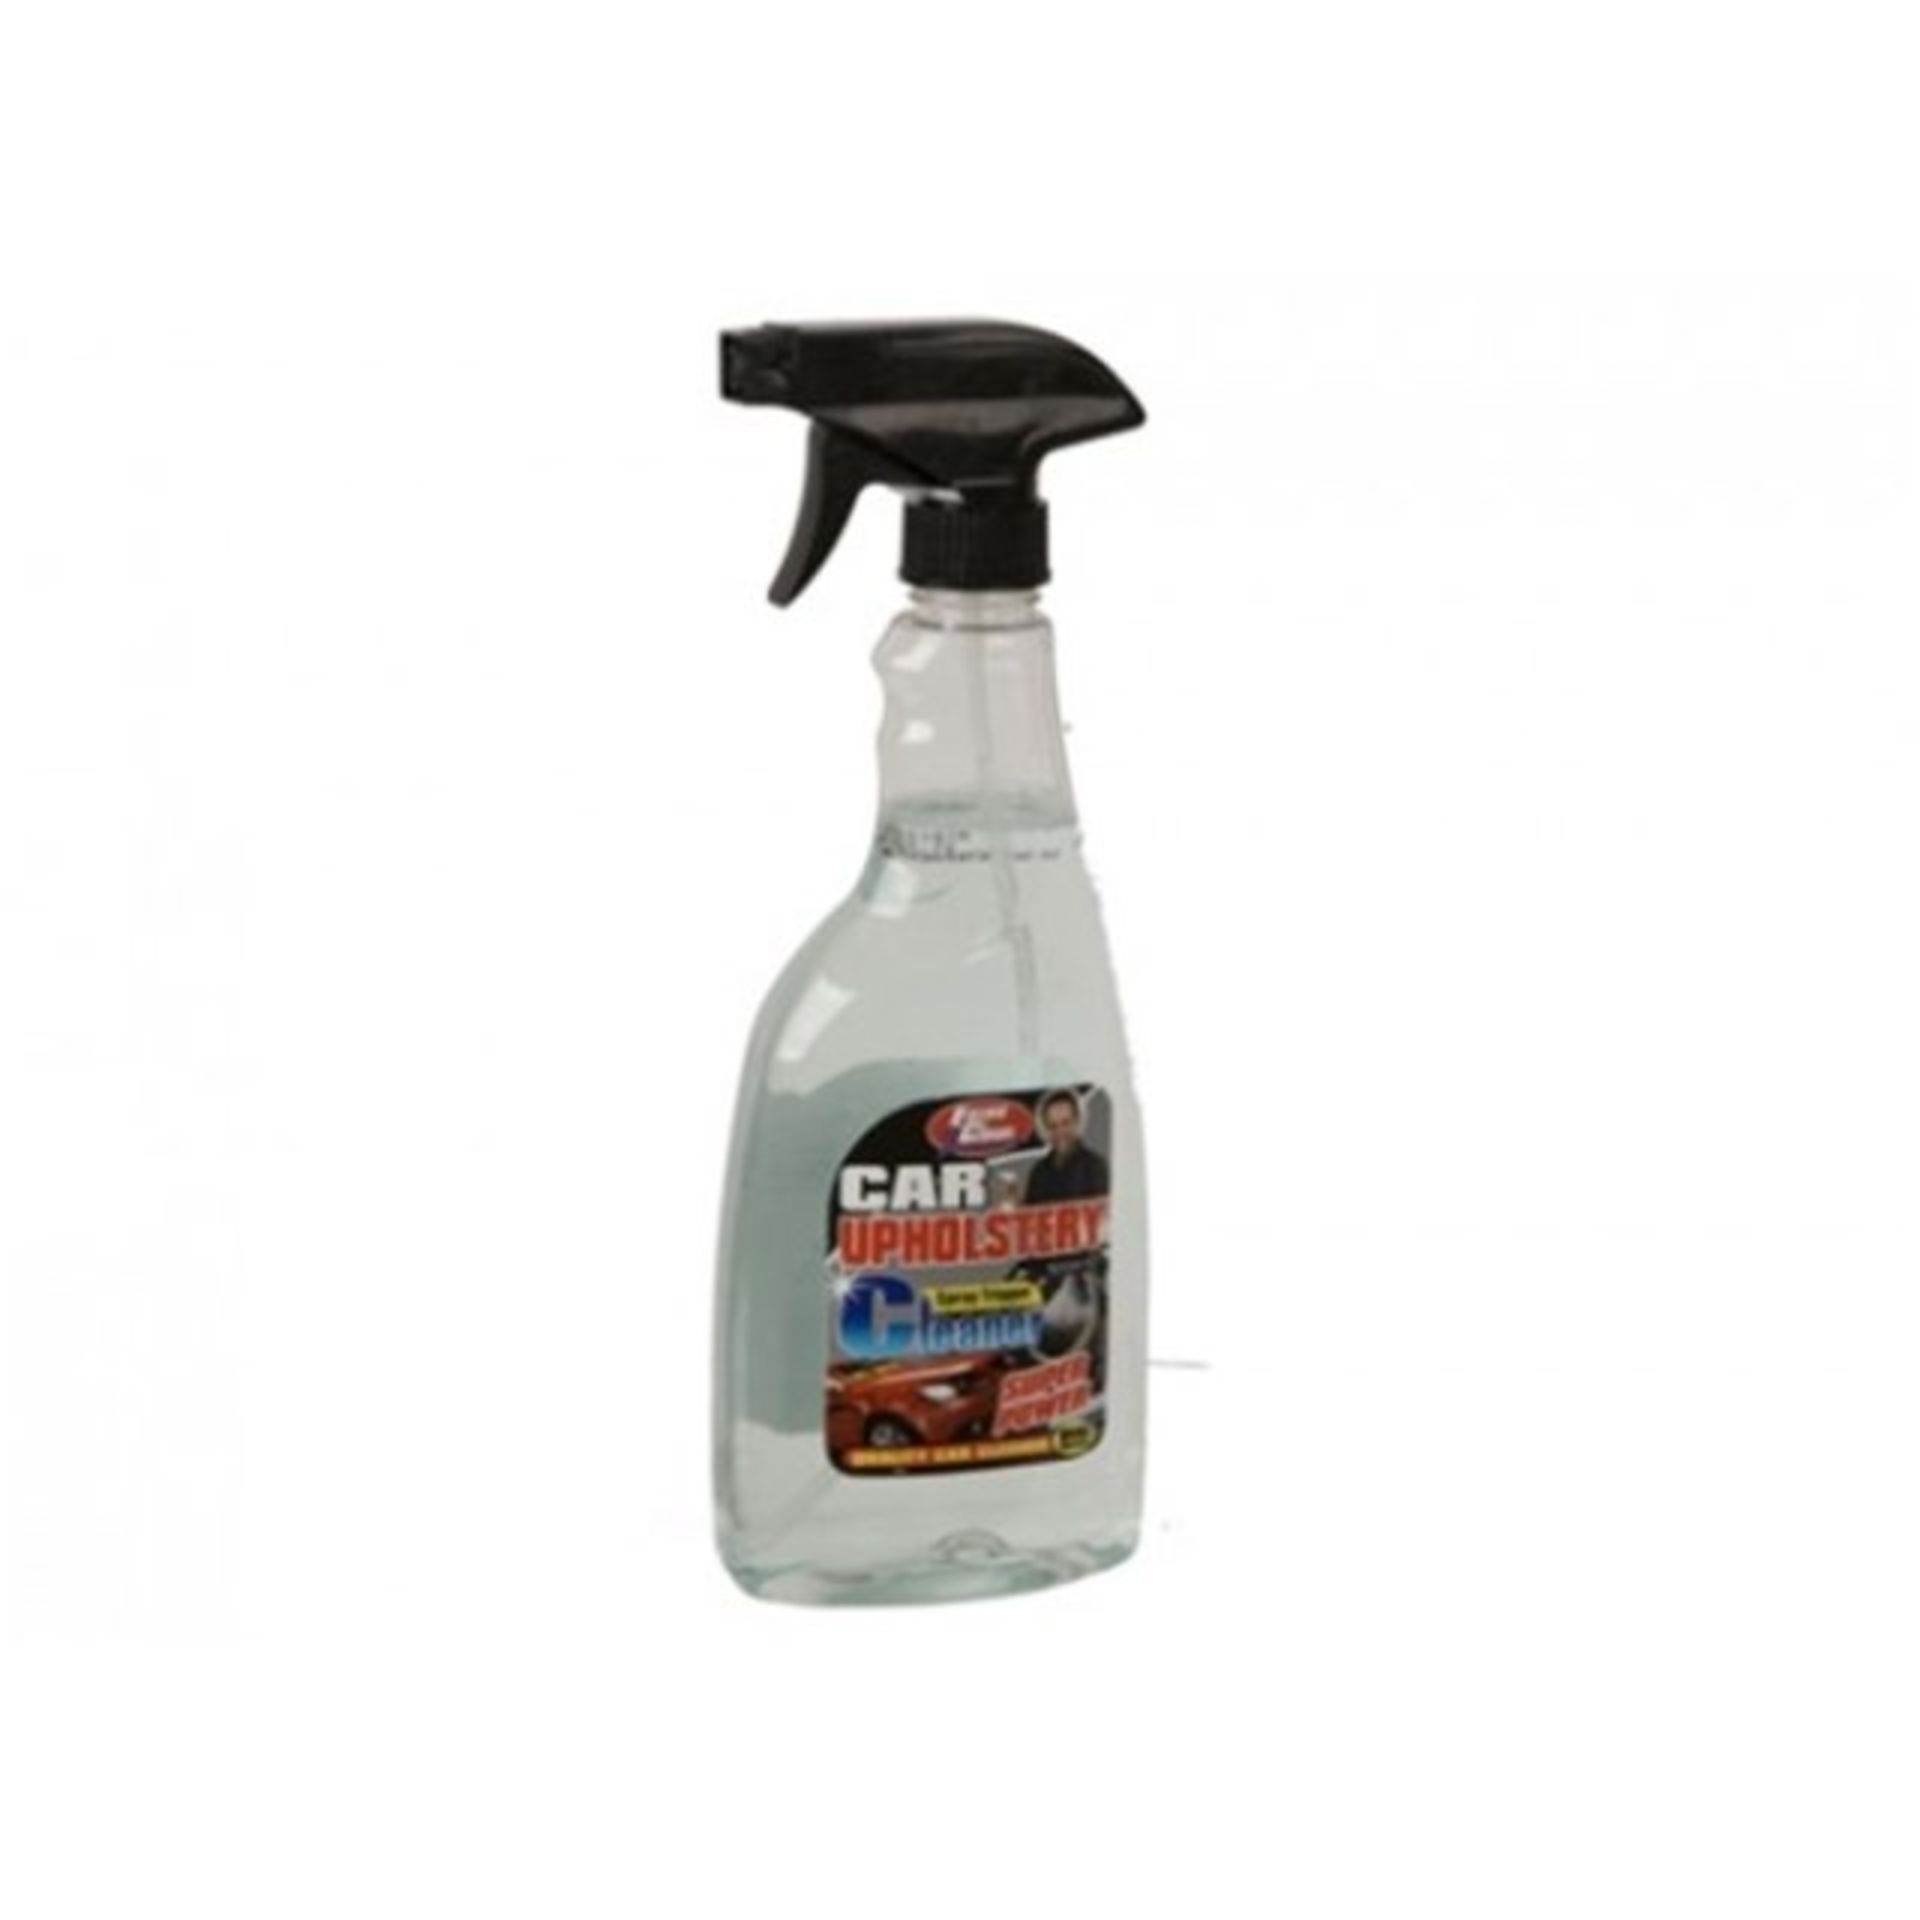 V Brand New Case Of 12 500ml Spray Bottles Of Car Upholstery Cleaner